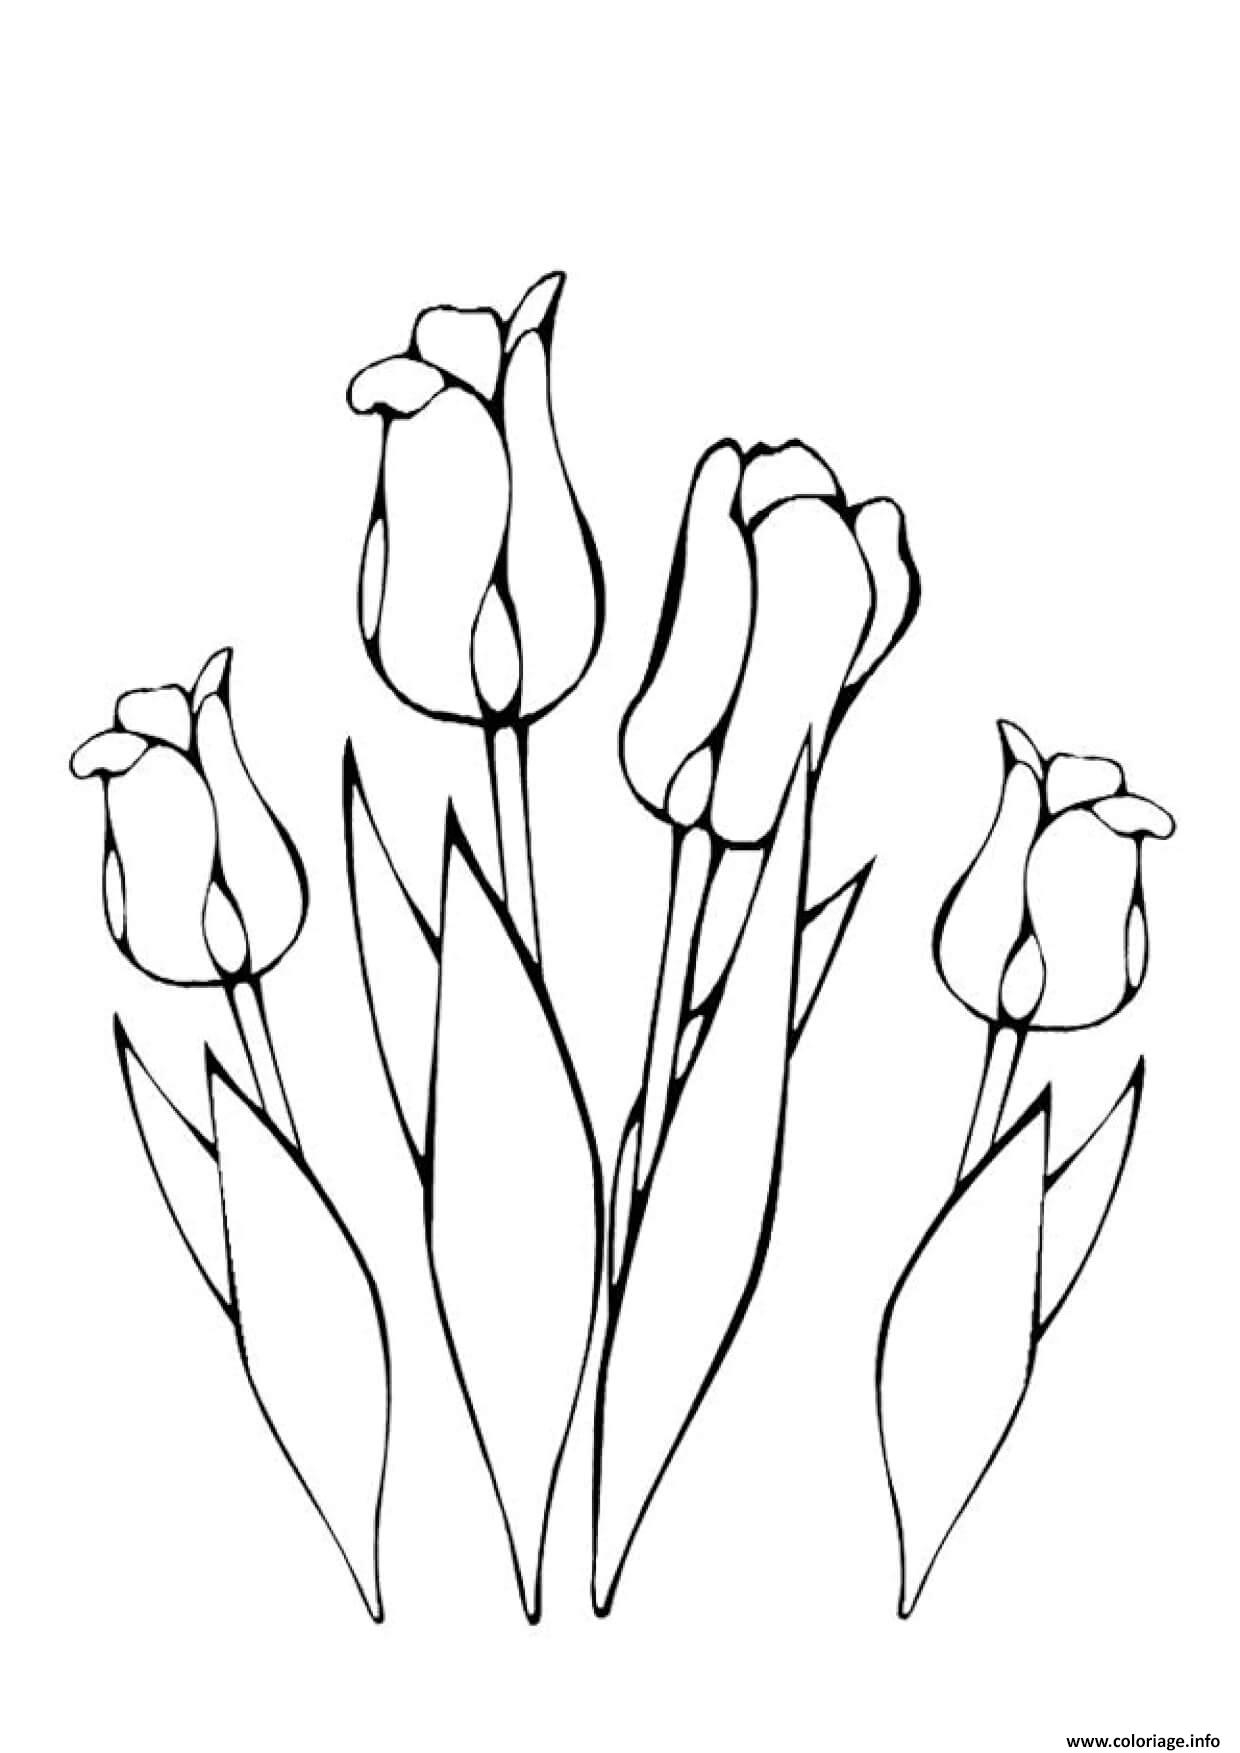 Coloriage Plusieurs Fleurs Tulipes Greigii Dessin À Imprimer dedans Fleur Coloriage